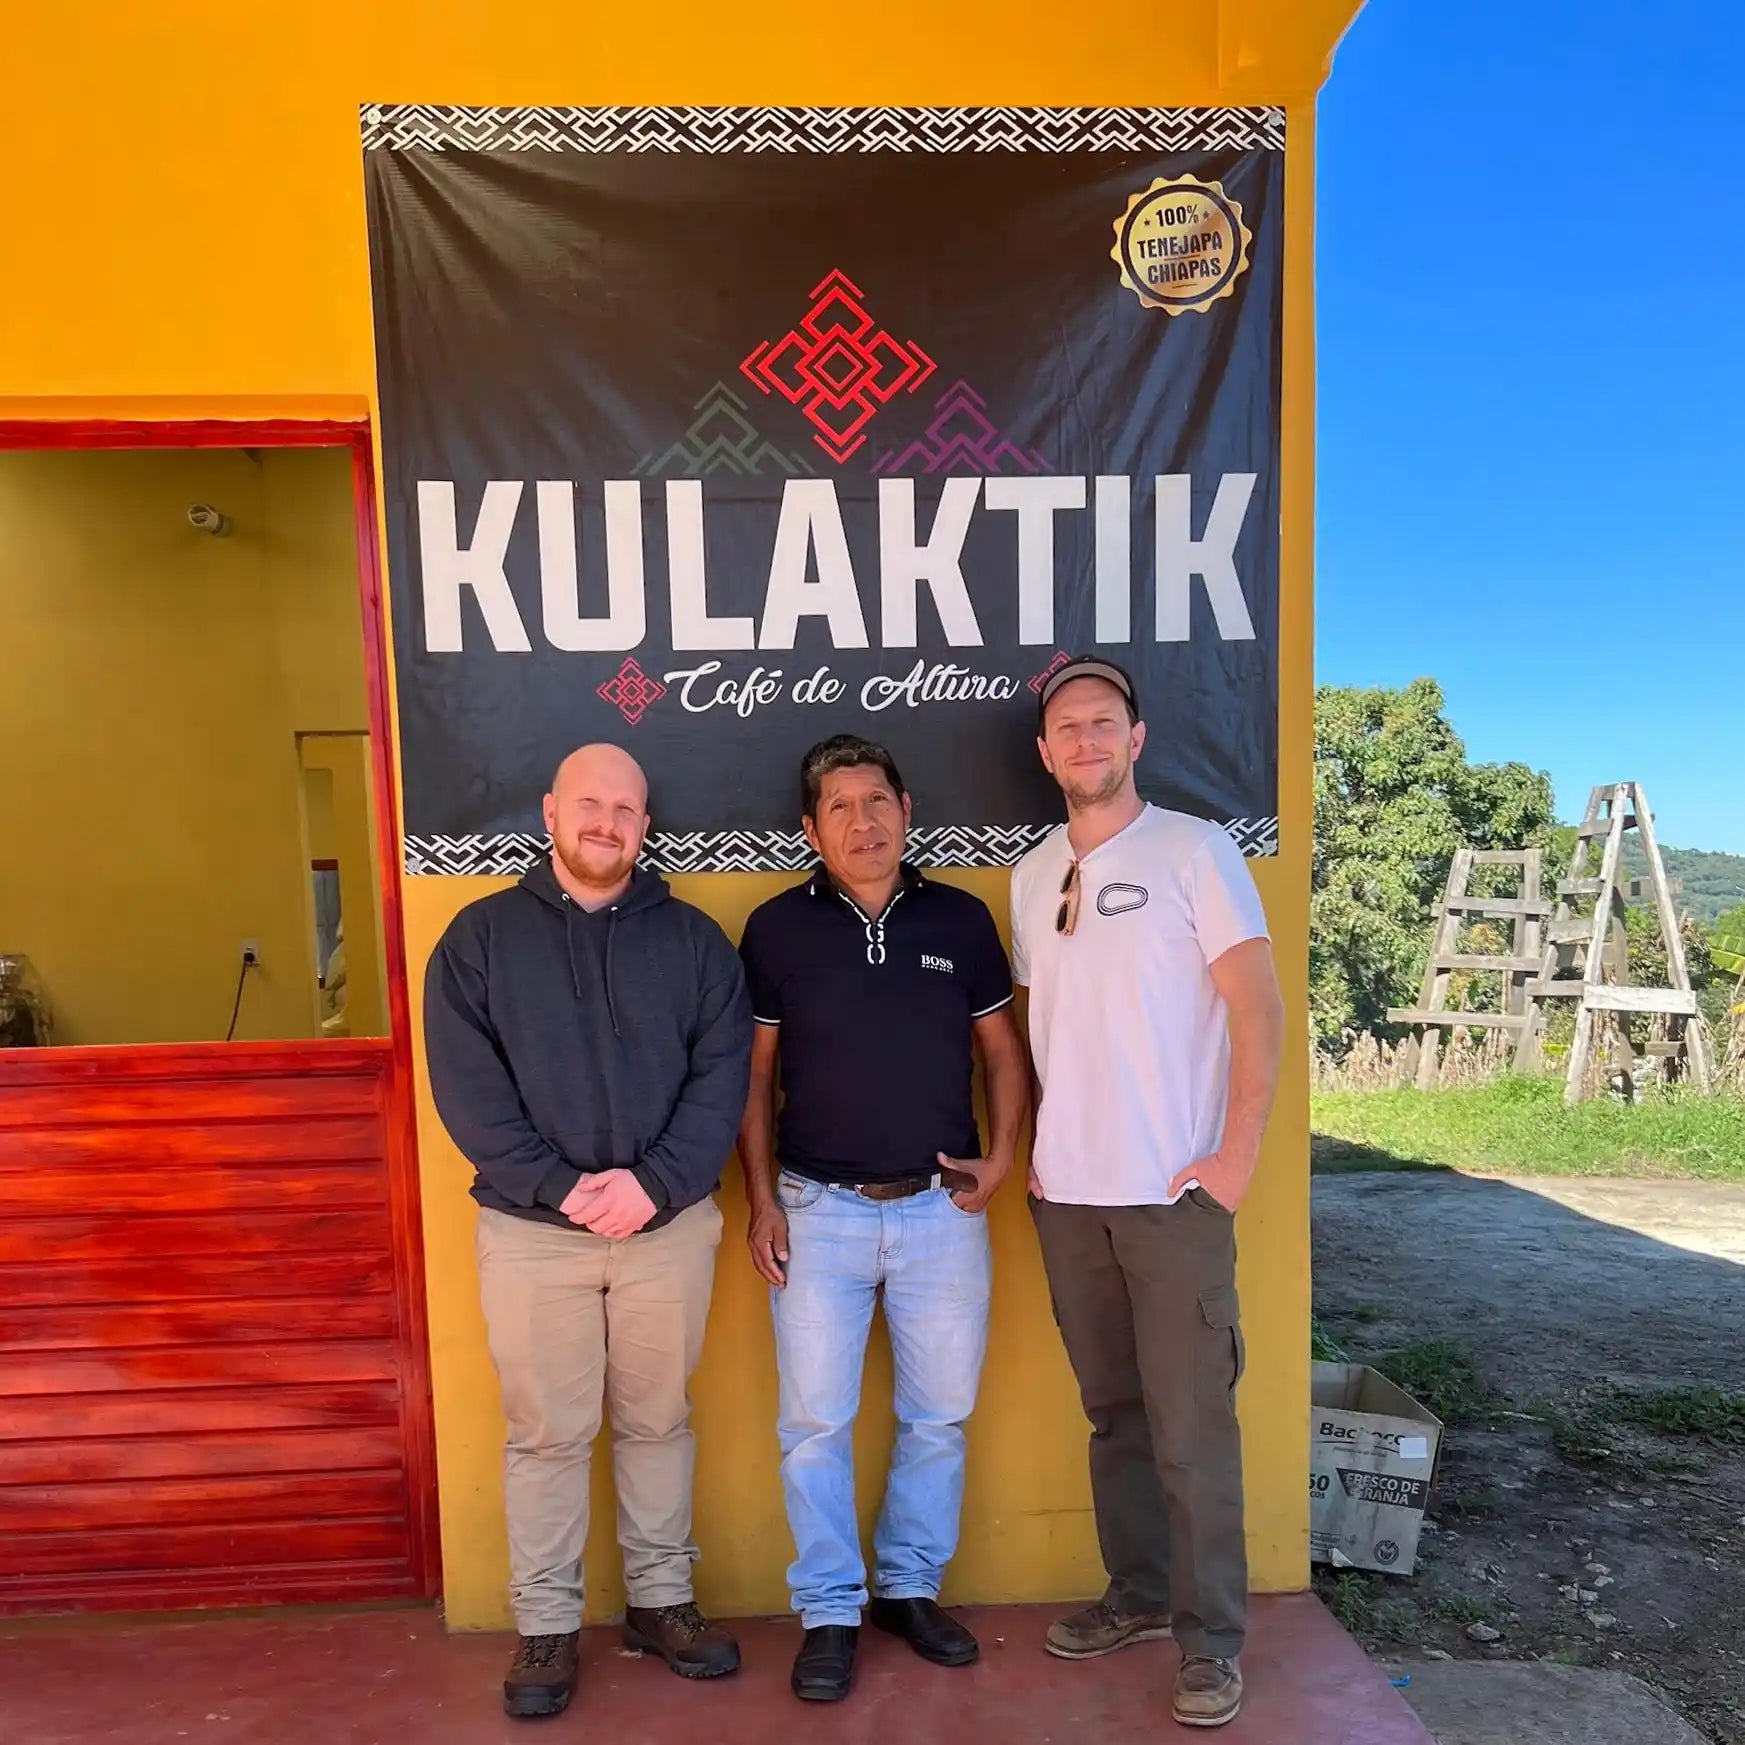 Hacea Coffee's members Lukeh & Jared standing with Kulaktik's founding member, Pedro Mendez